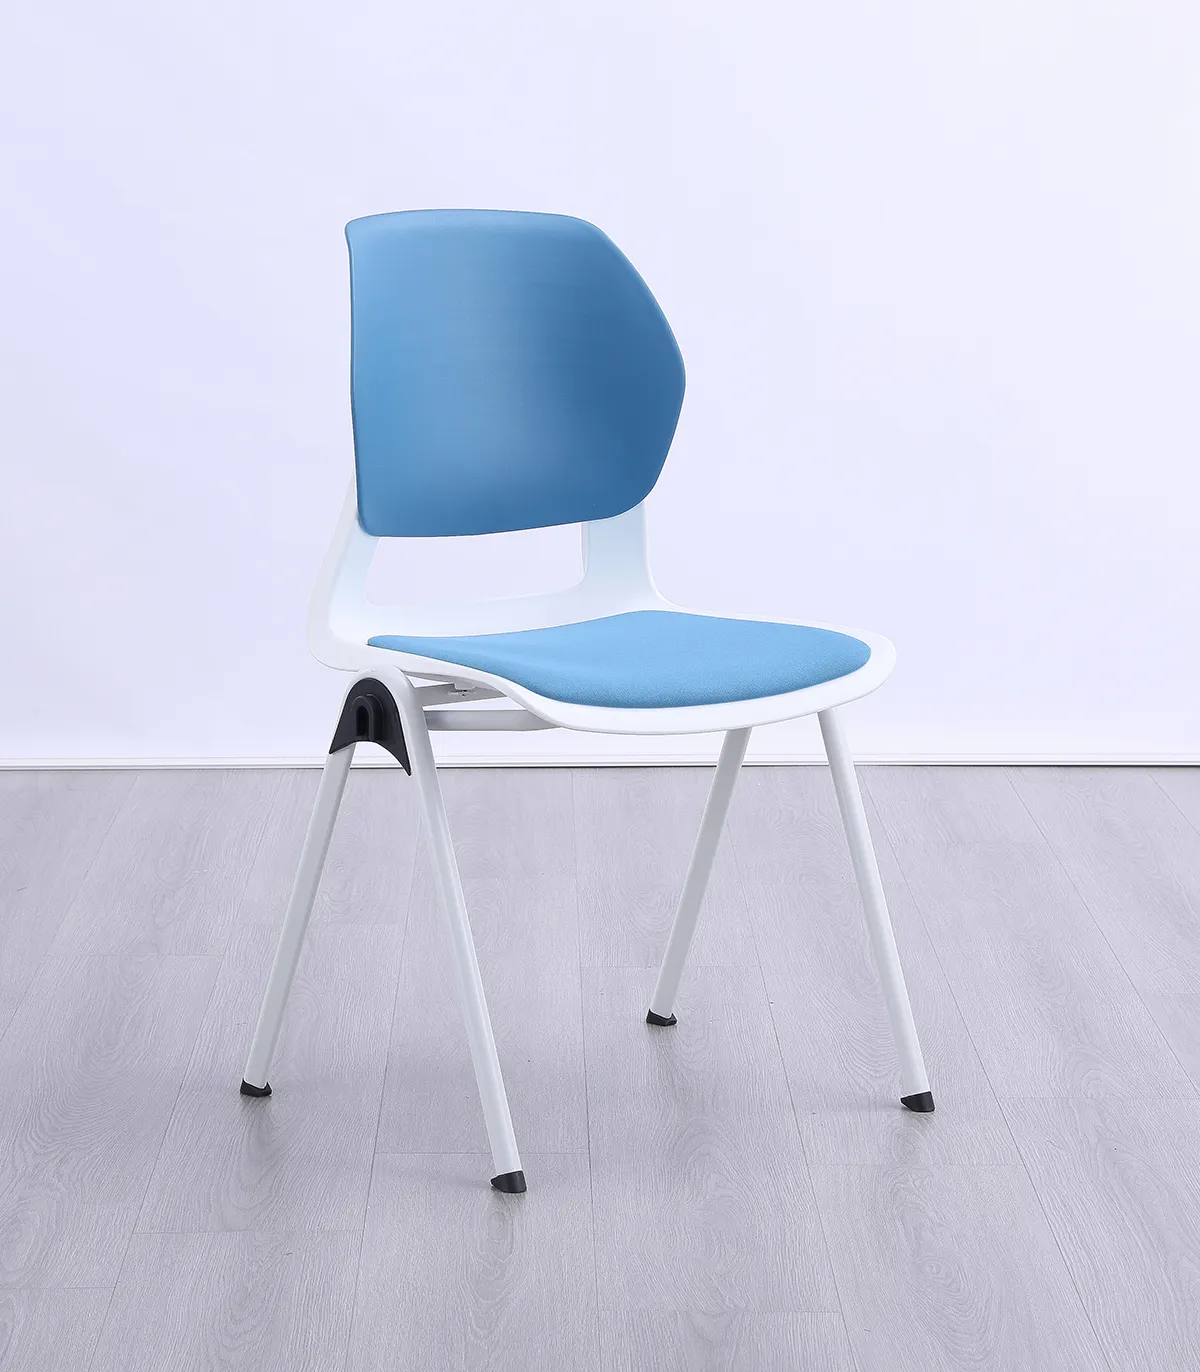 Школьный одноместный стол и стул многоцветный индивидуальный студенческий стул для учебных классов стул ABS сиденье